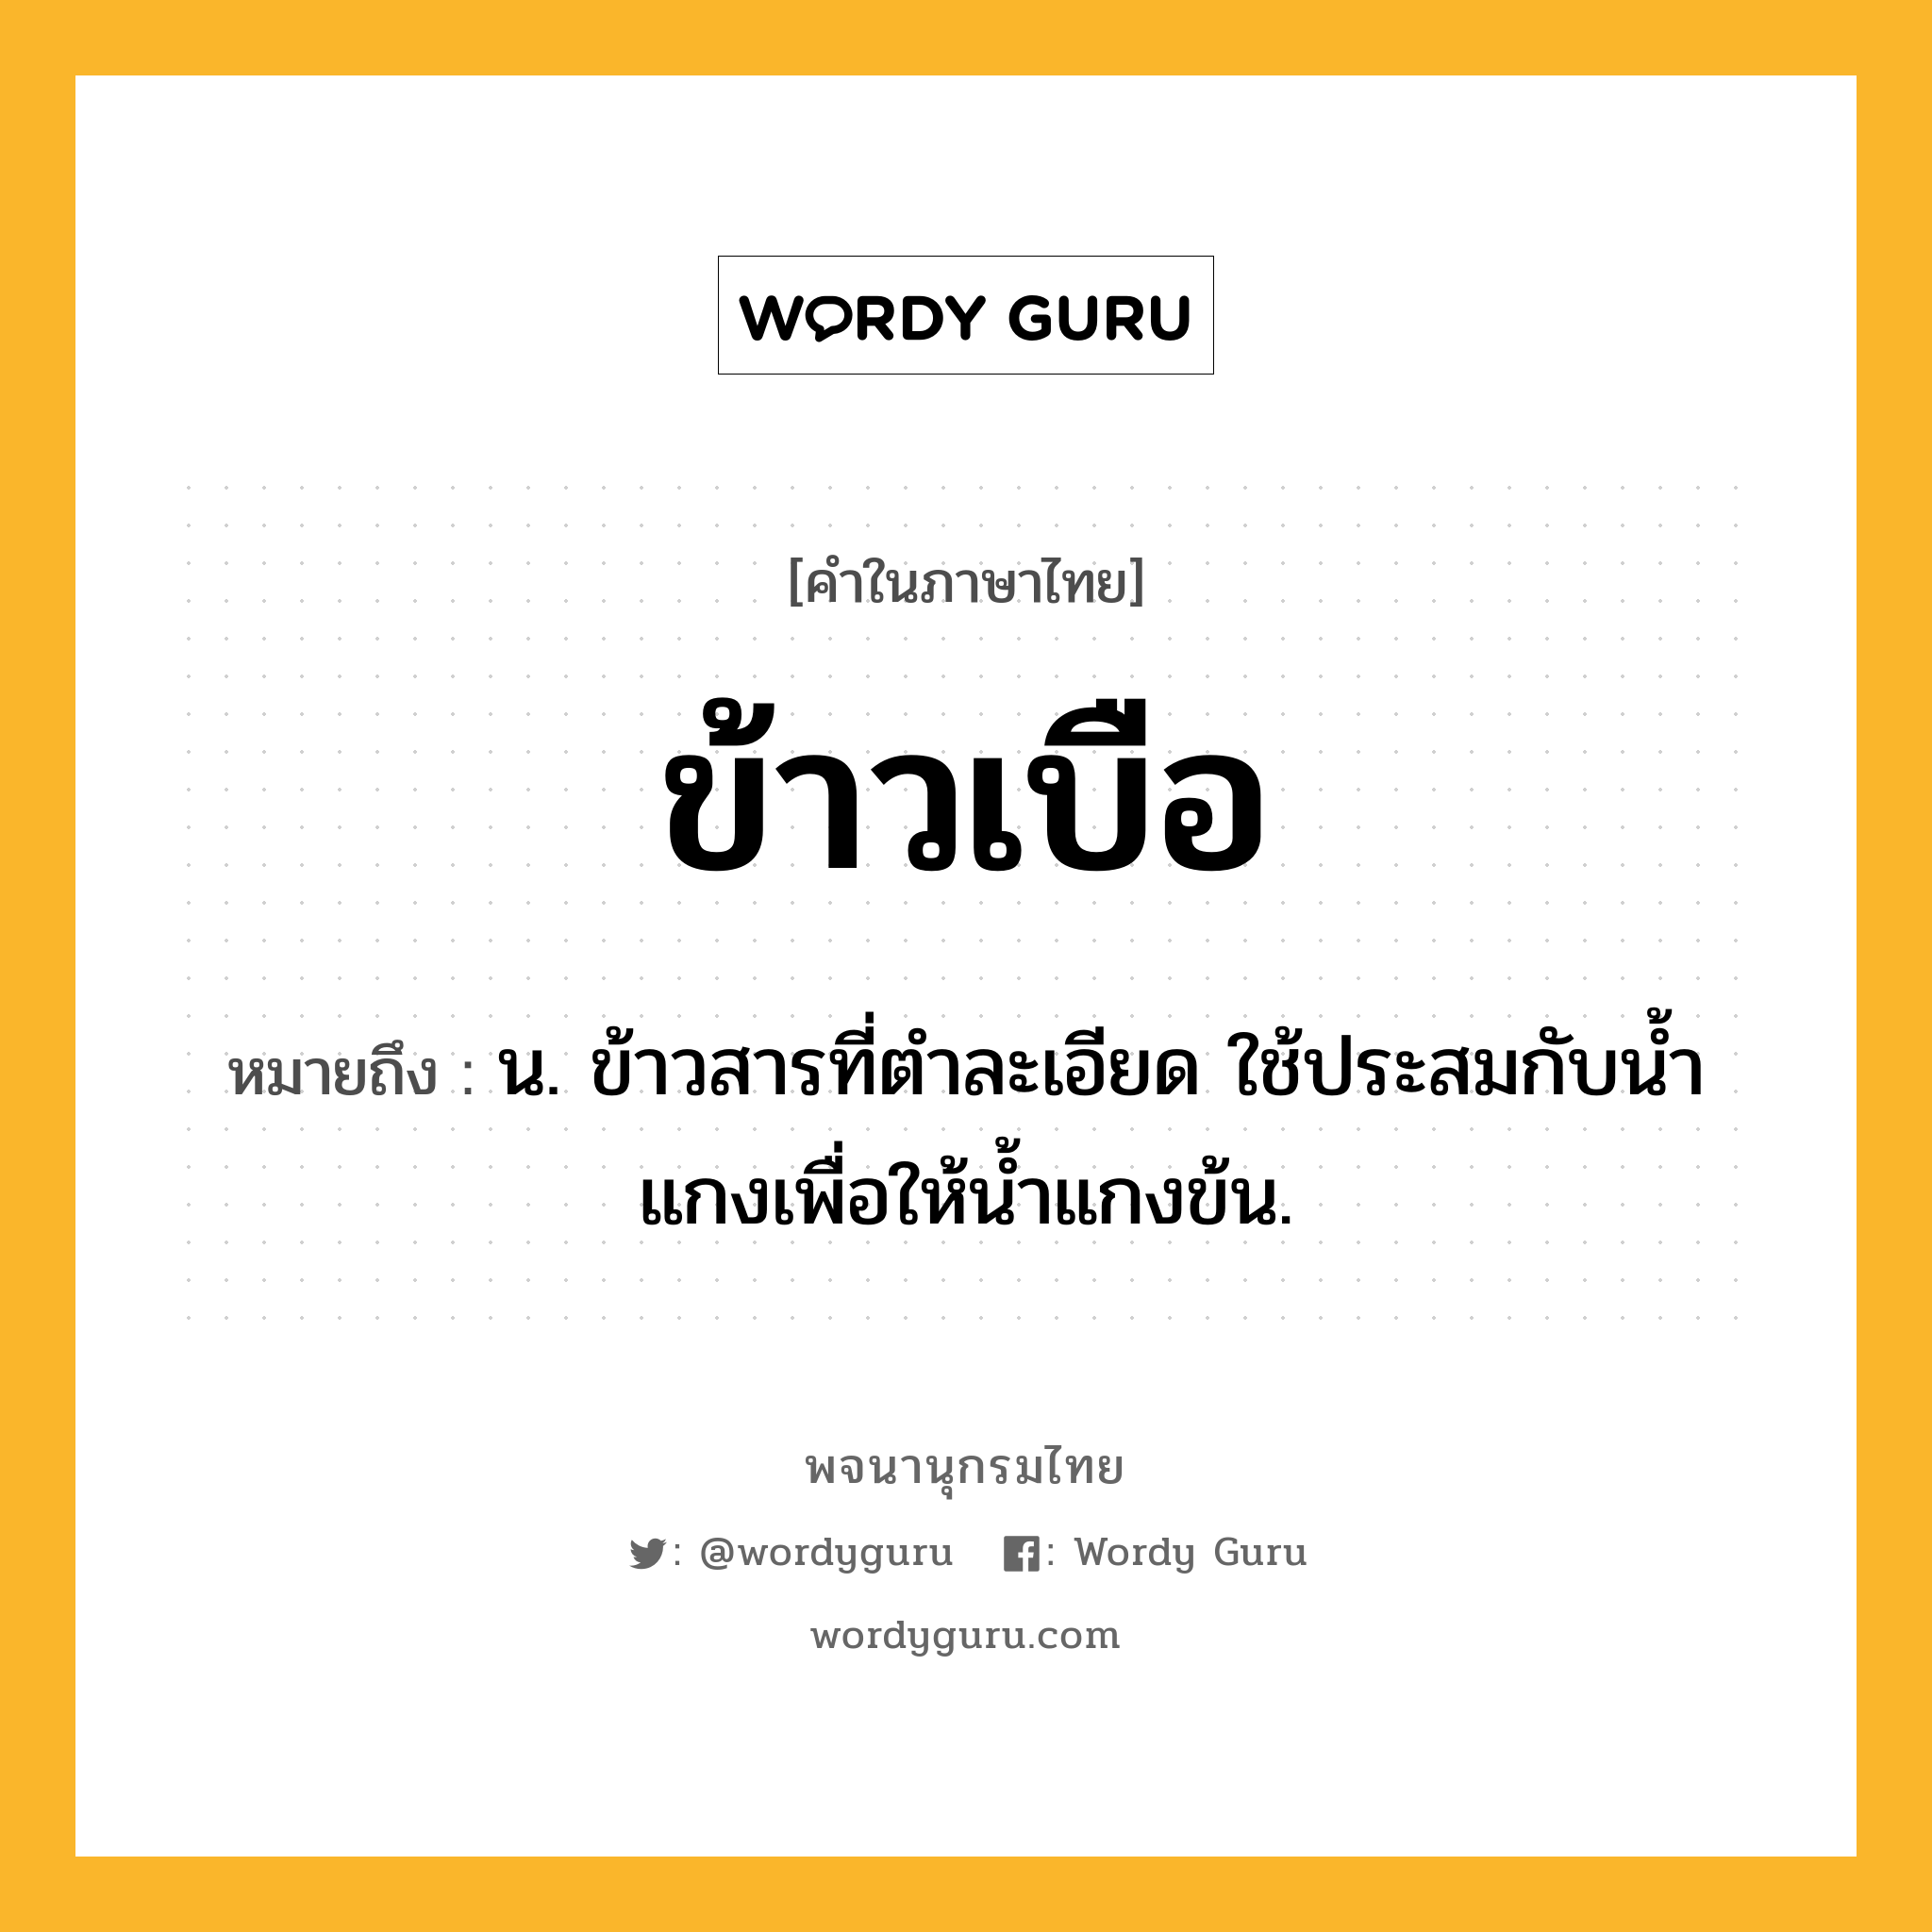 ข้าวเบือ ความหมาย หมายถึงอะไร?, คำในภาษาไทย ข้าวเบือ หมายถึง น. ข้าวสารที่ตําละเอียด ใช้ประสมกับนํ้าแกงเพื่อให้นํ้าแกงข้น.